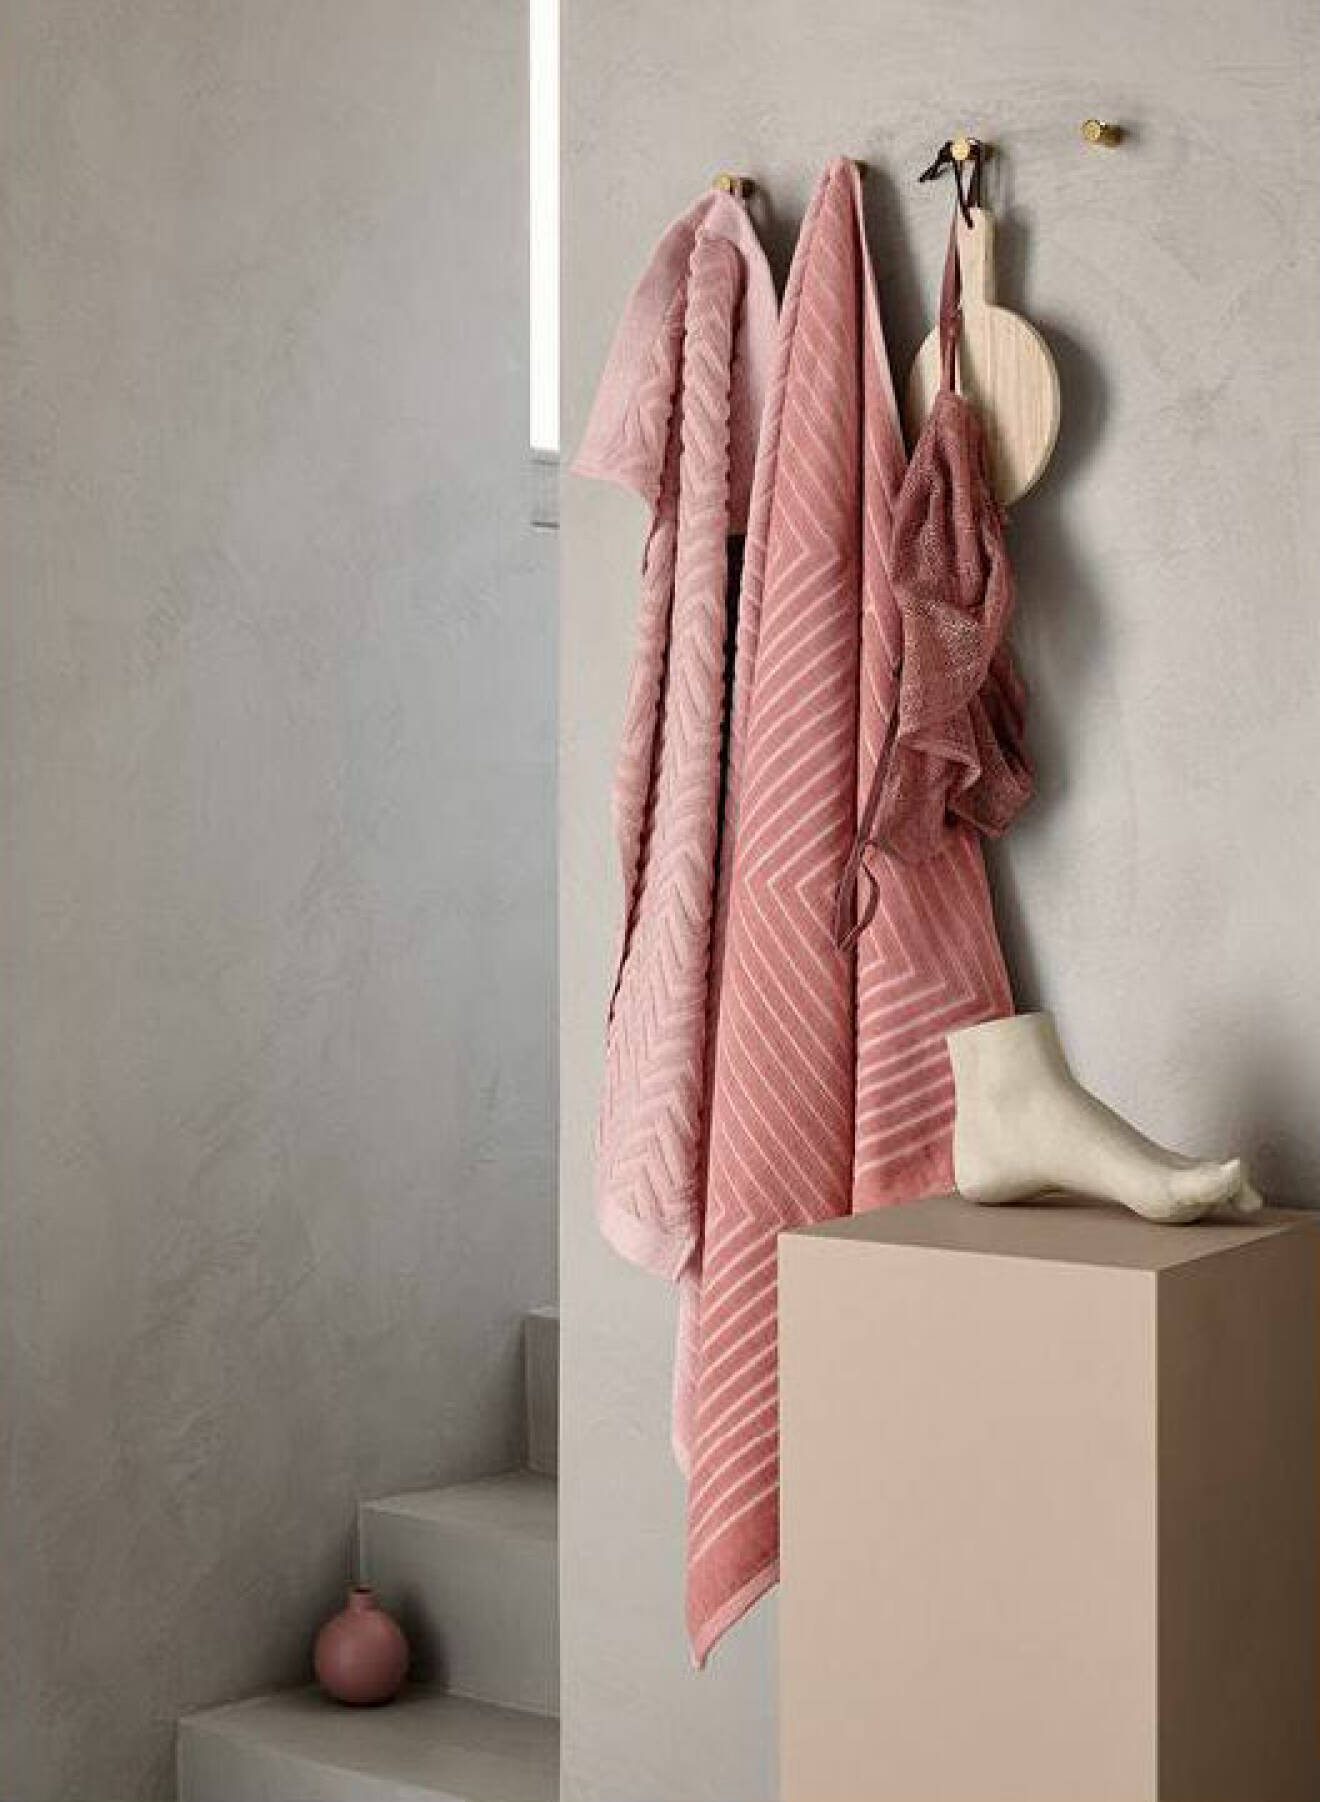 Rosa handdukar, badrum i betong och grått. Pidestal med prydnadsfot på. H&M Home våren 2018. 